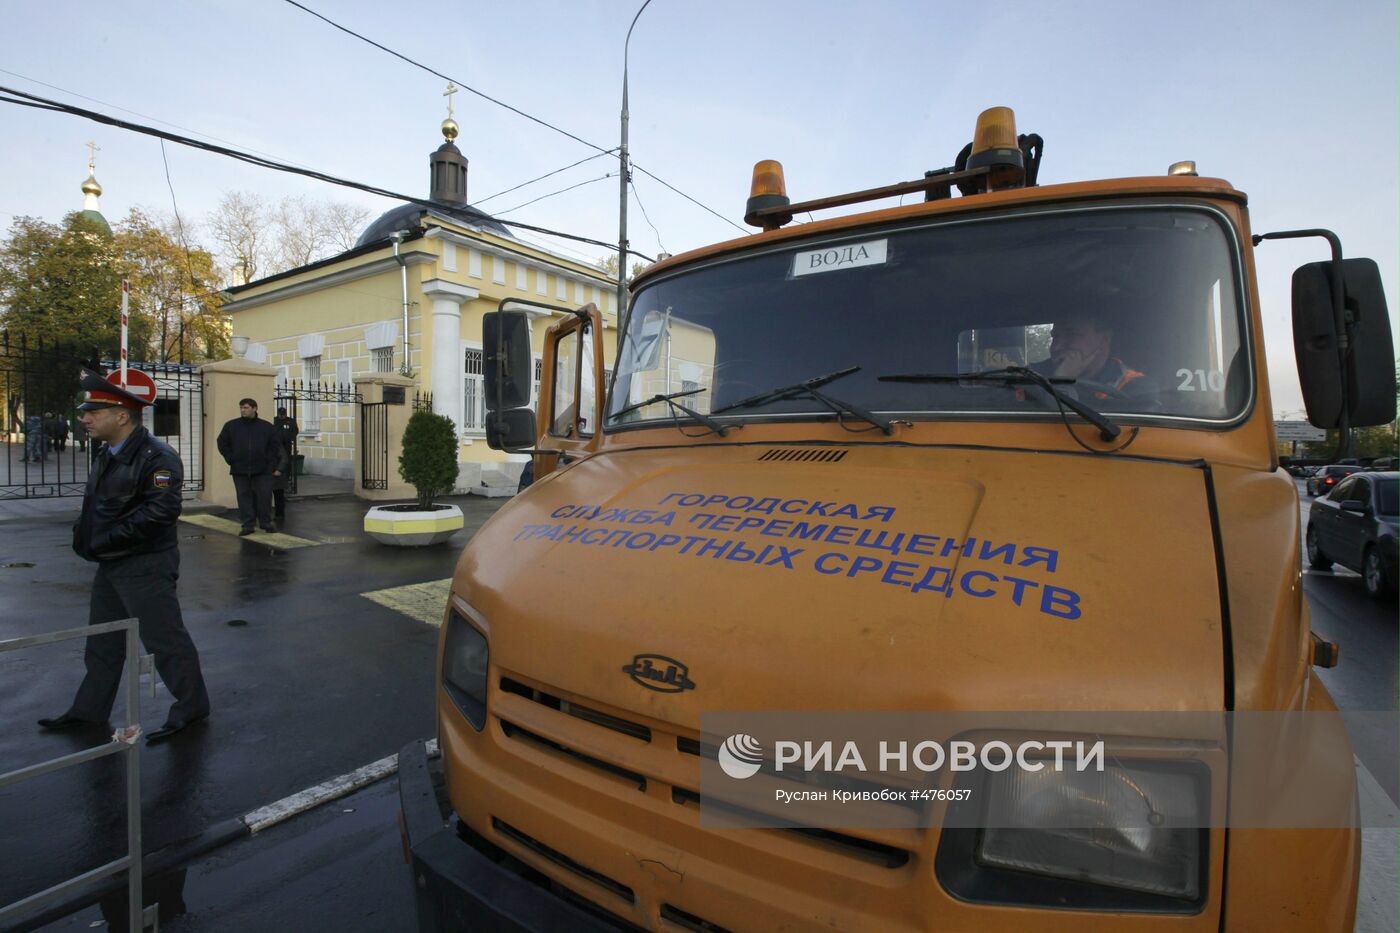 Усилены меры безопасности вокруг Ваганьковского кладбища